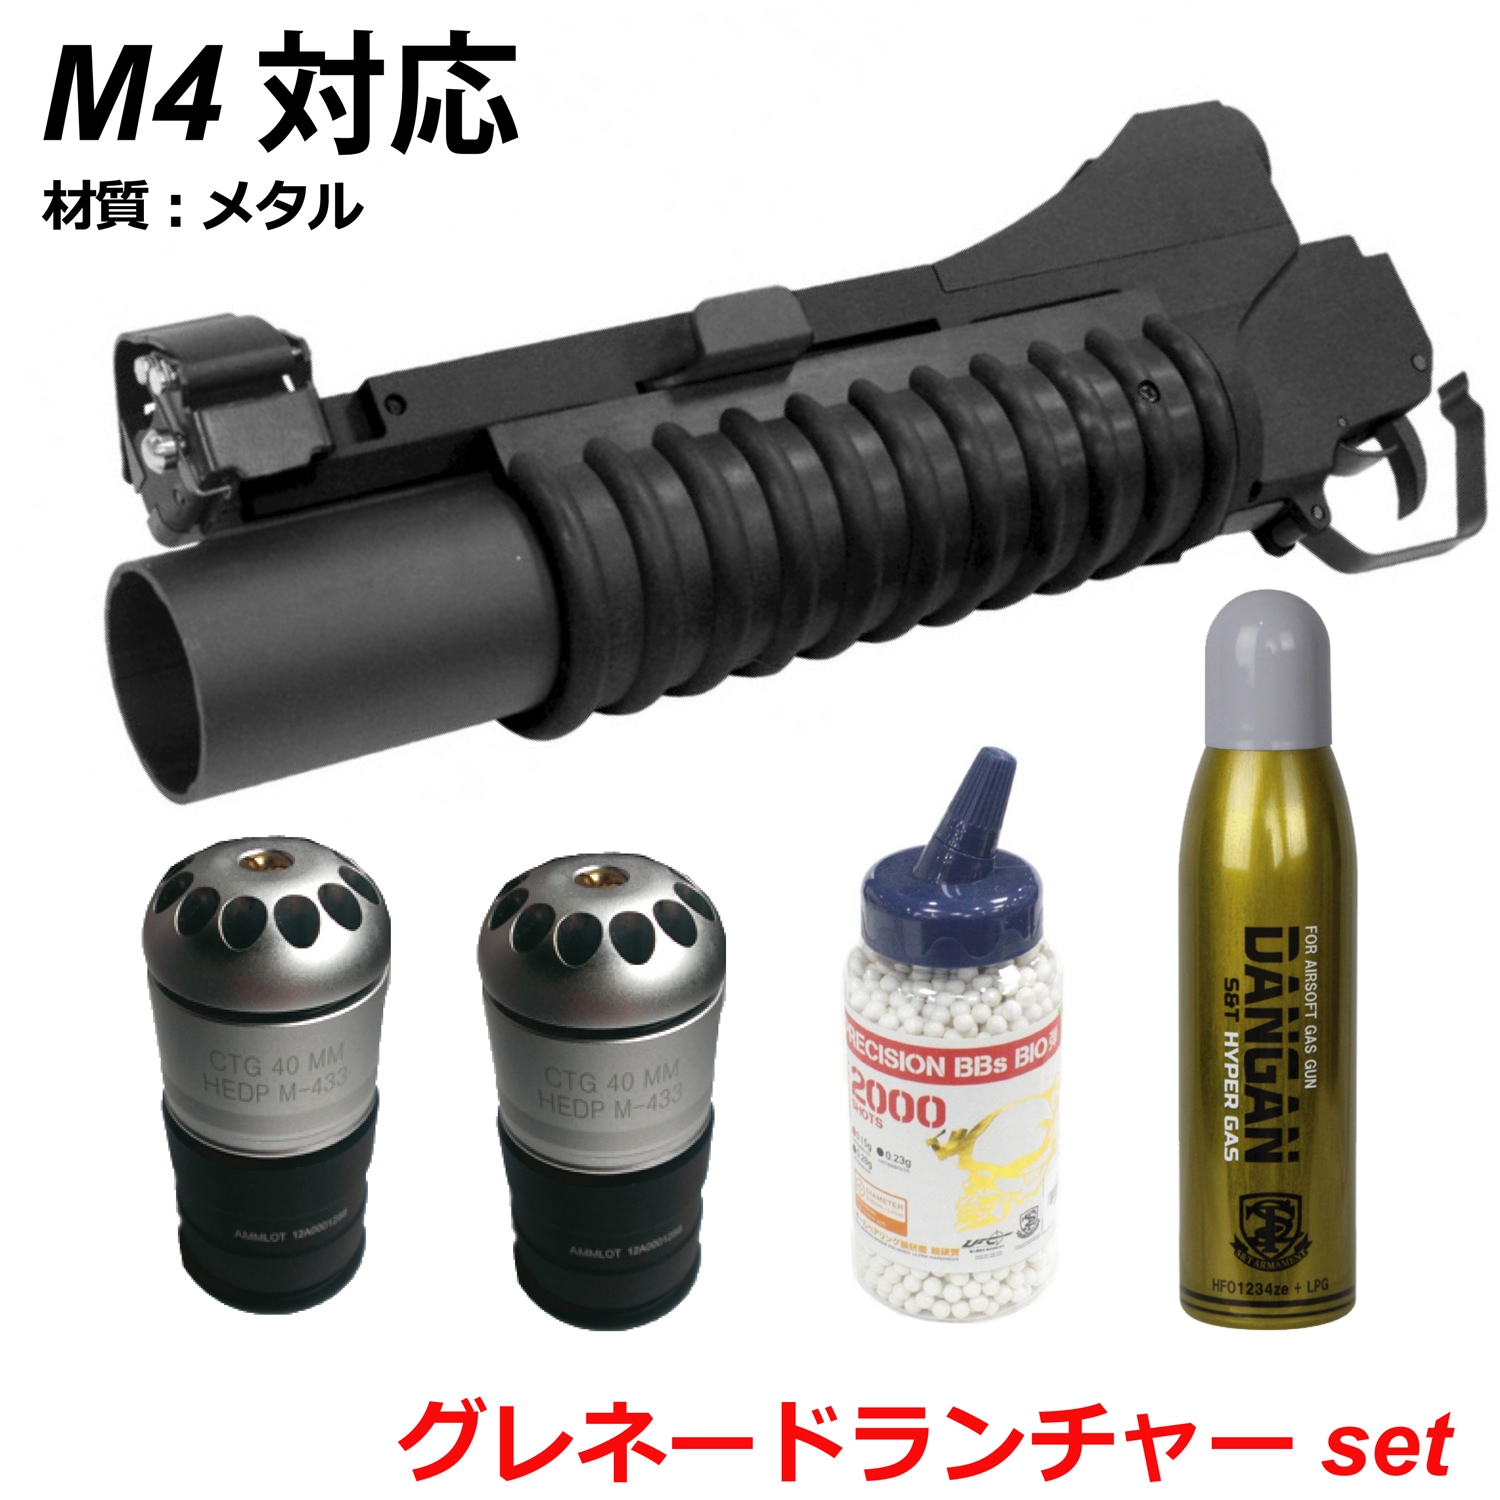 フォースターBOX】S&T M203 メタル グレネードランチャー Short BK